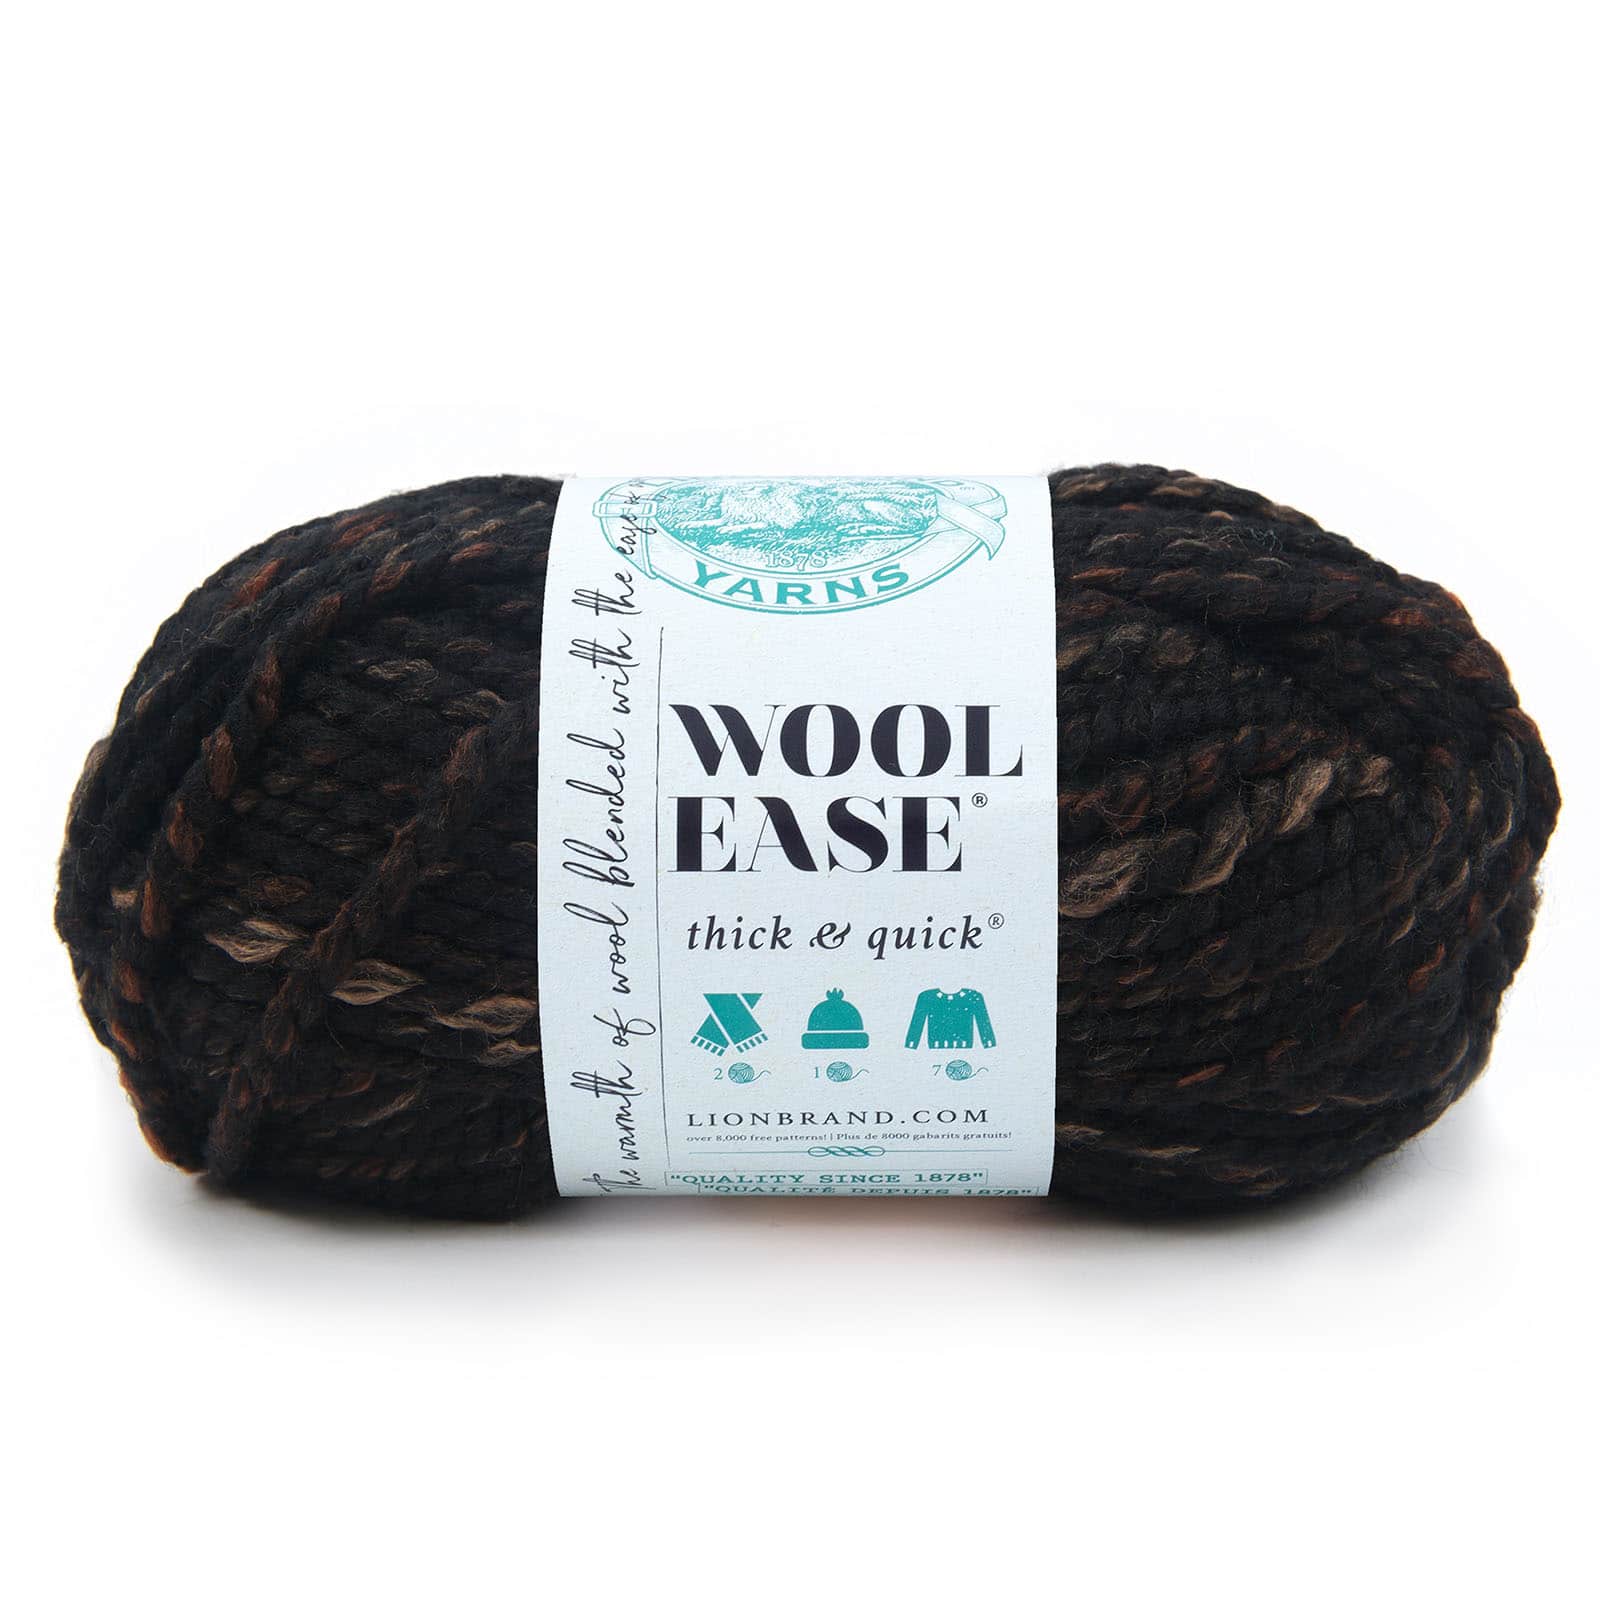  Lion Brand Yarn (1 Skein) Wool-Ease Yarn, Oxford Grey